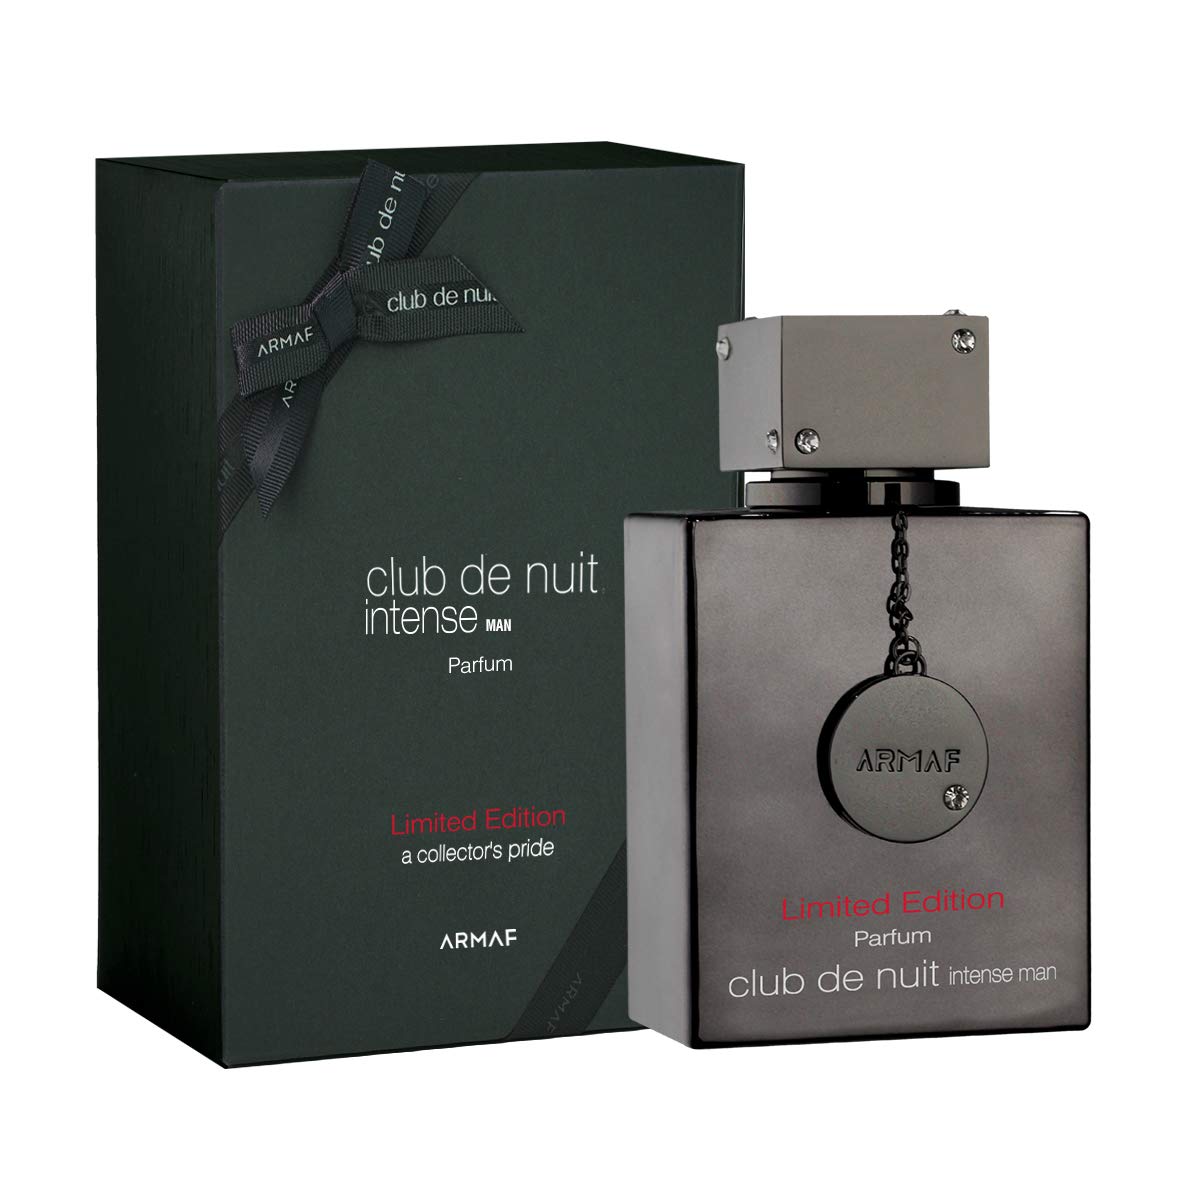 Armaf CDNIM Limited Edition Parfum 105ml FragranceBH